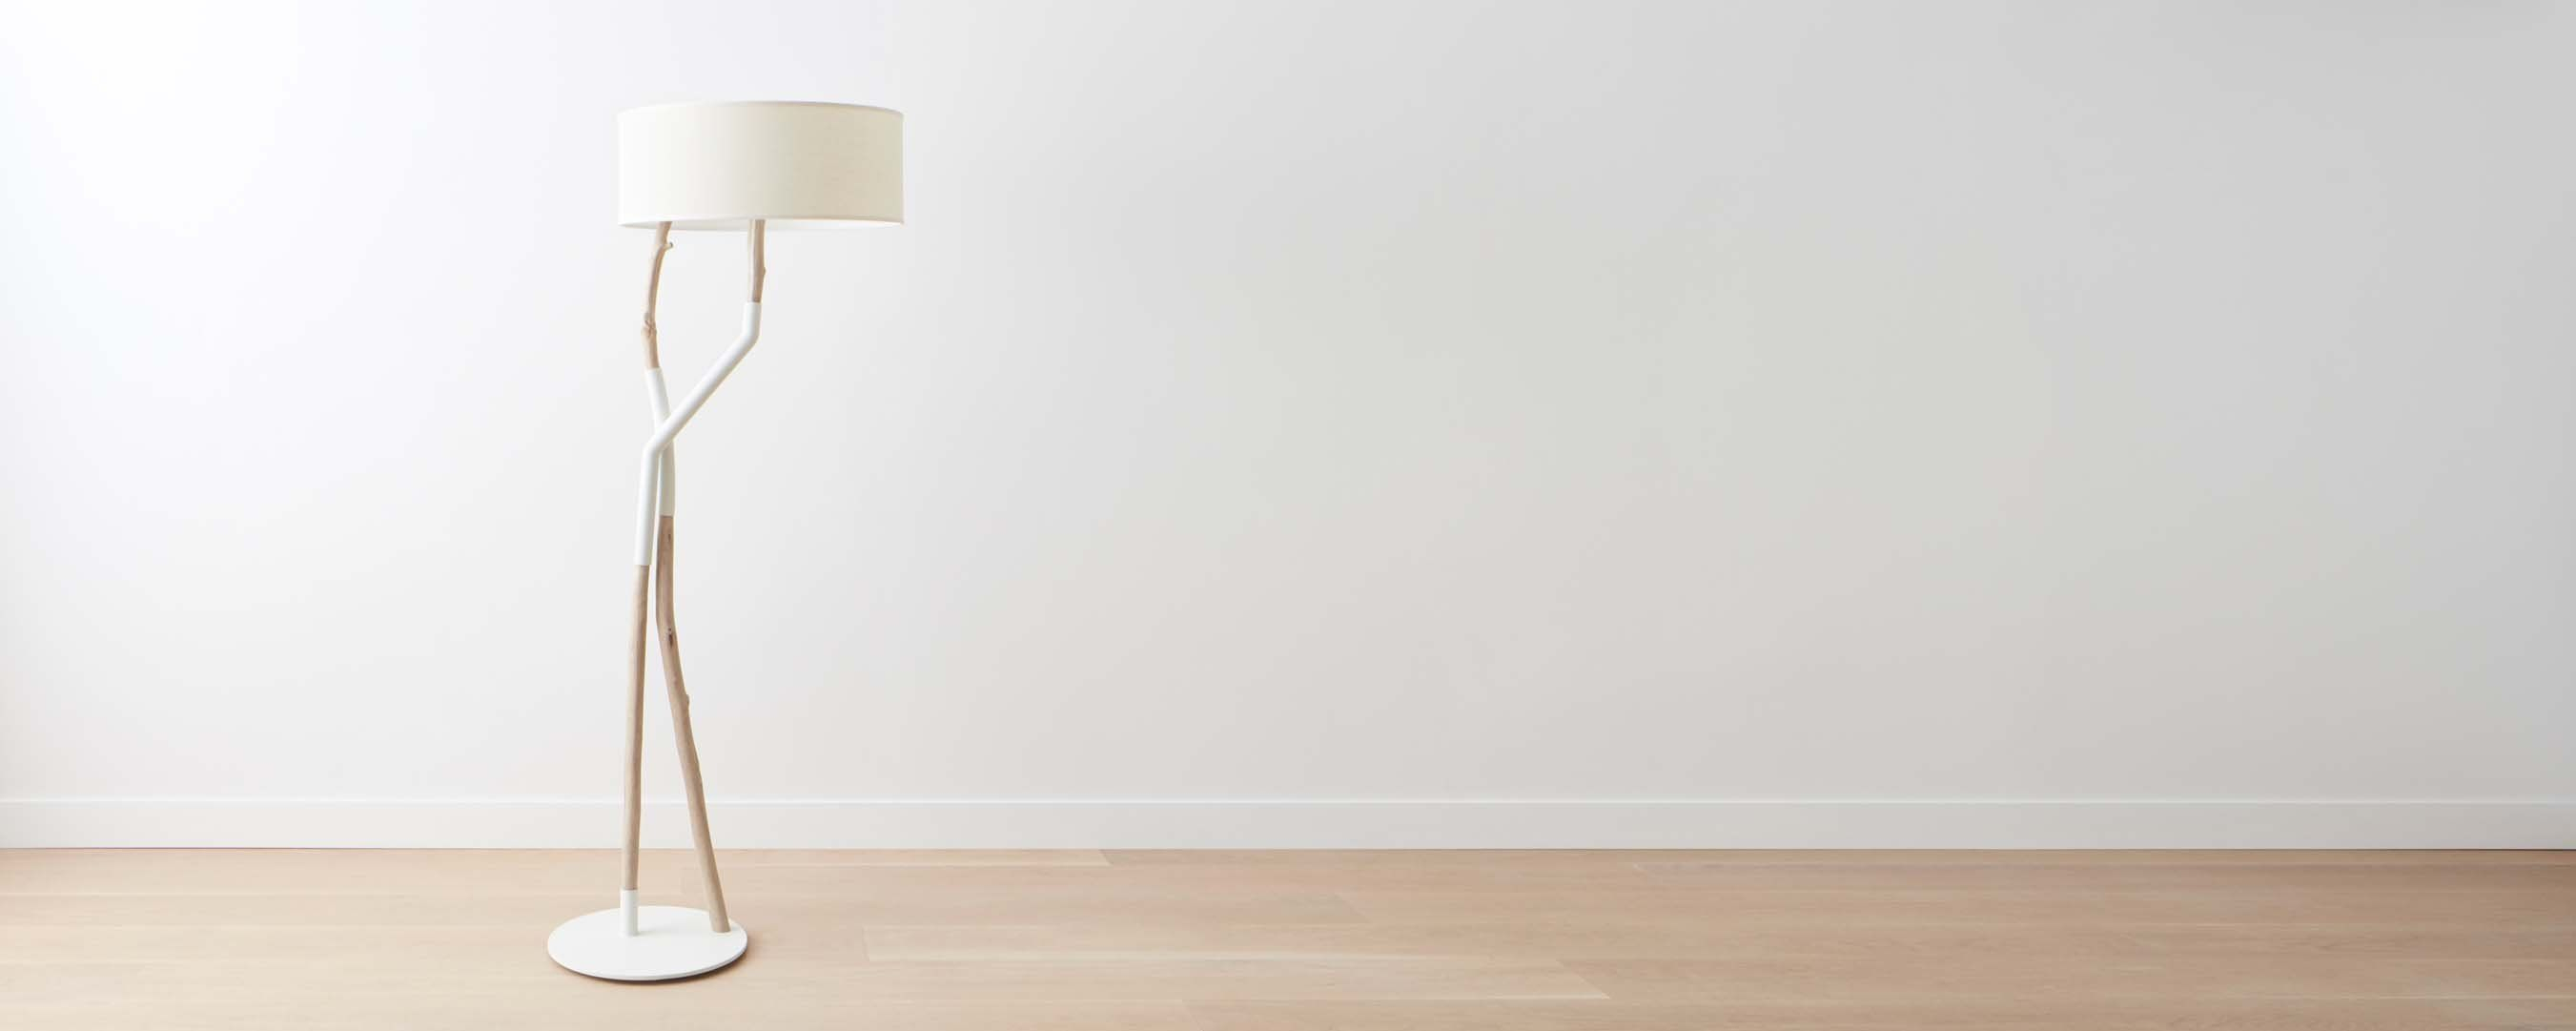 Berkeley Double Branch Floor Lamp Floor Lamp White Floor within sizing 2702 X 1081